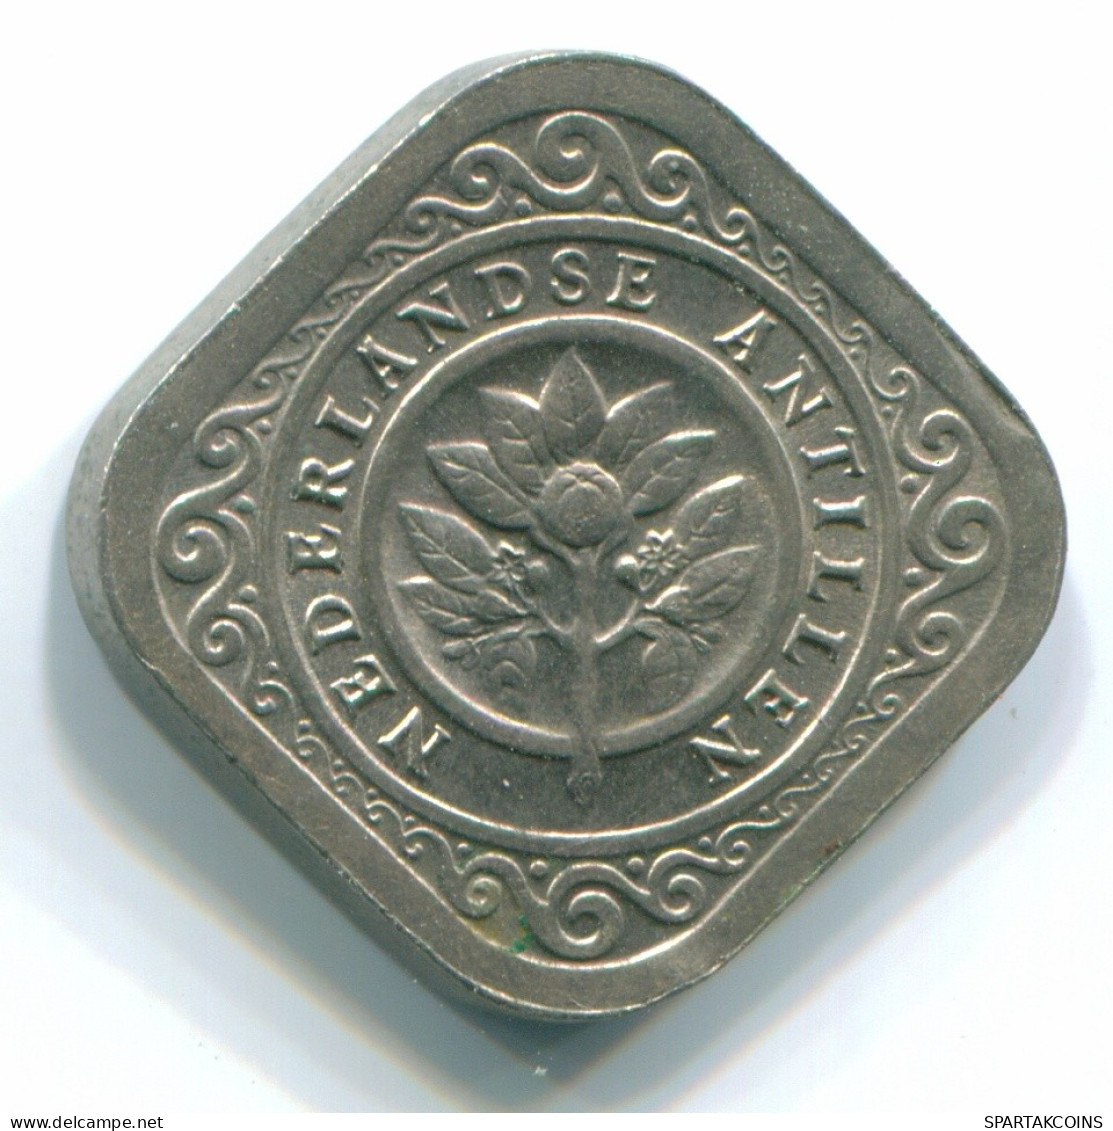 5 CENTS 1970 NIEDERLÄNDISCHE ANTILLEN Nickel Koloniale Münze #S12494.D.A - Antilles Néerlandaises